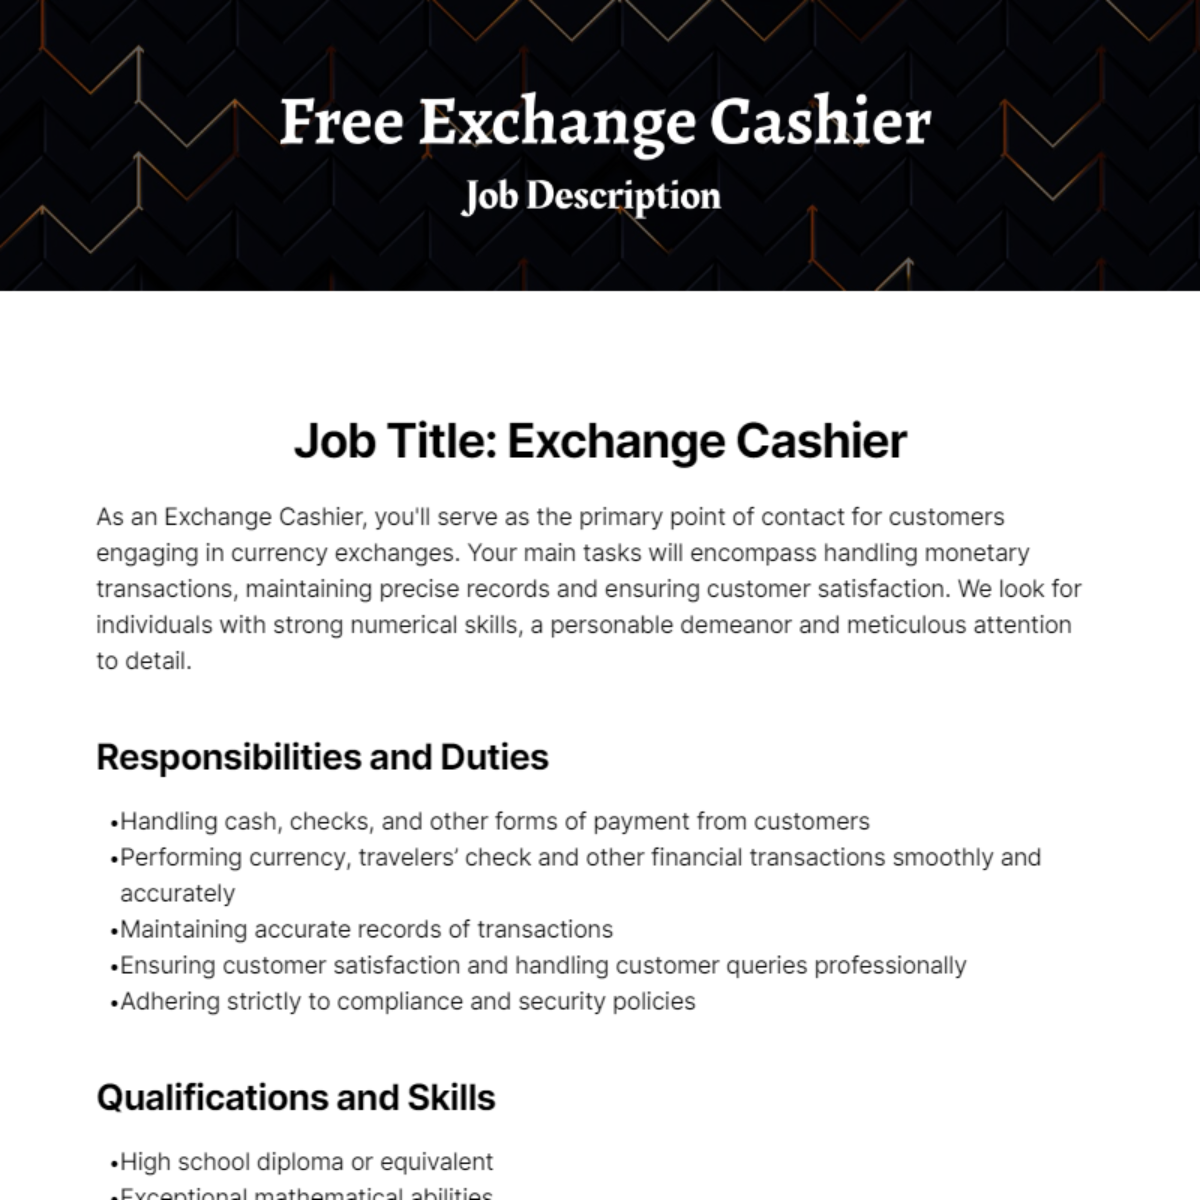 Free Exchange Cashier Job Description Template